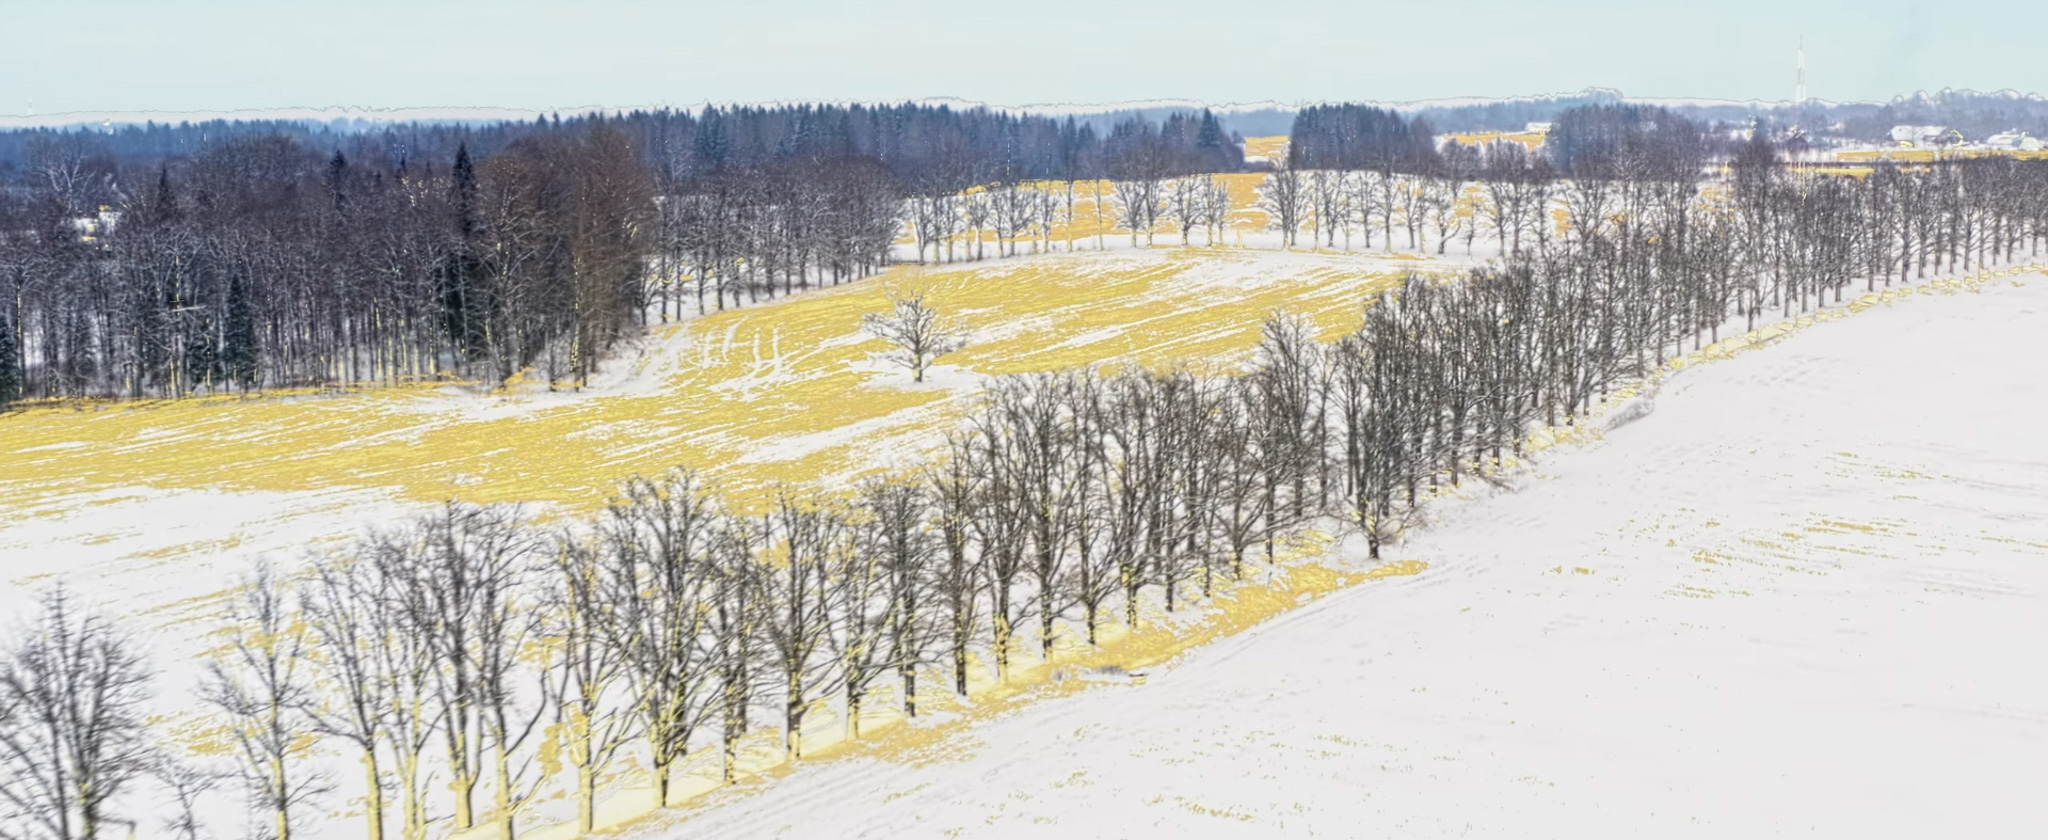 Video 'Landscapes of Change' chuyển giao các mùa tuyệt đẹp được quay bằng Mavic 2 Pro